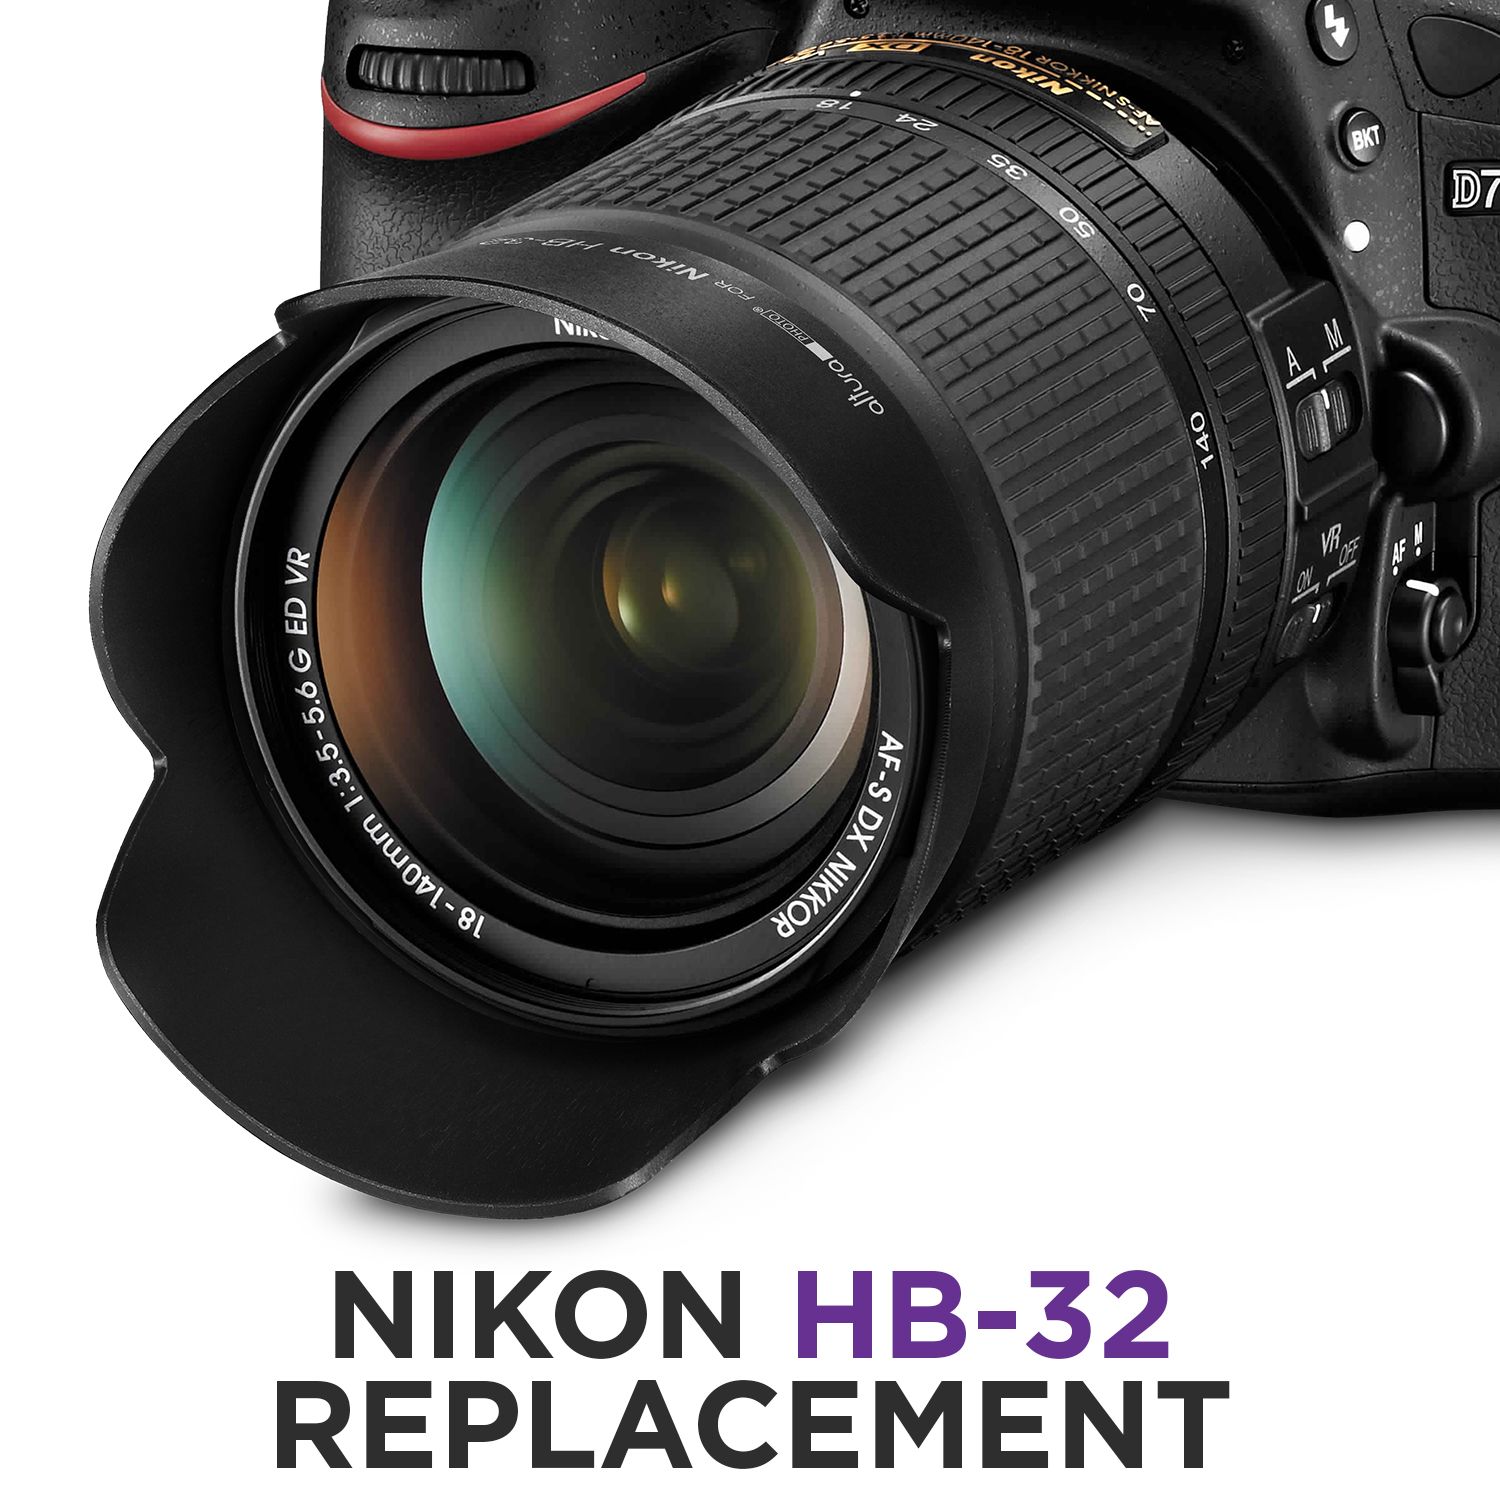 HB-32 HB-34 HB-35 HB-37 HB-39 HB-N106 HB-45 HB-46 HB-69 camera